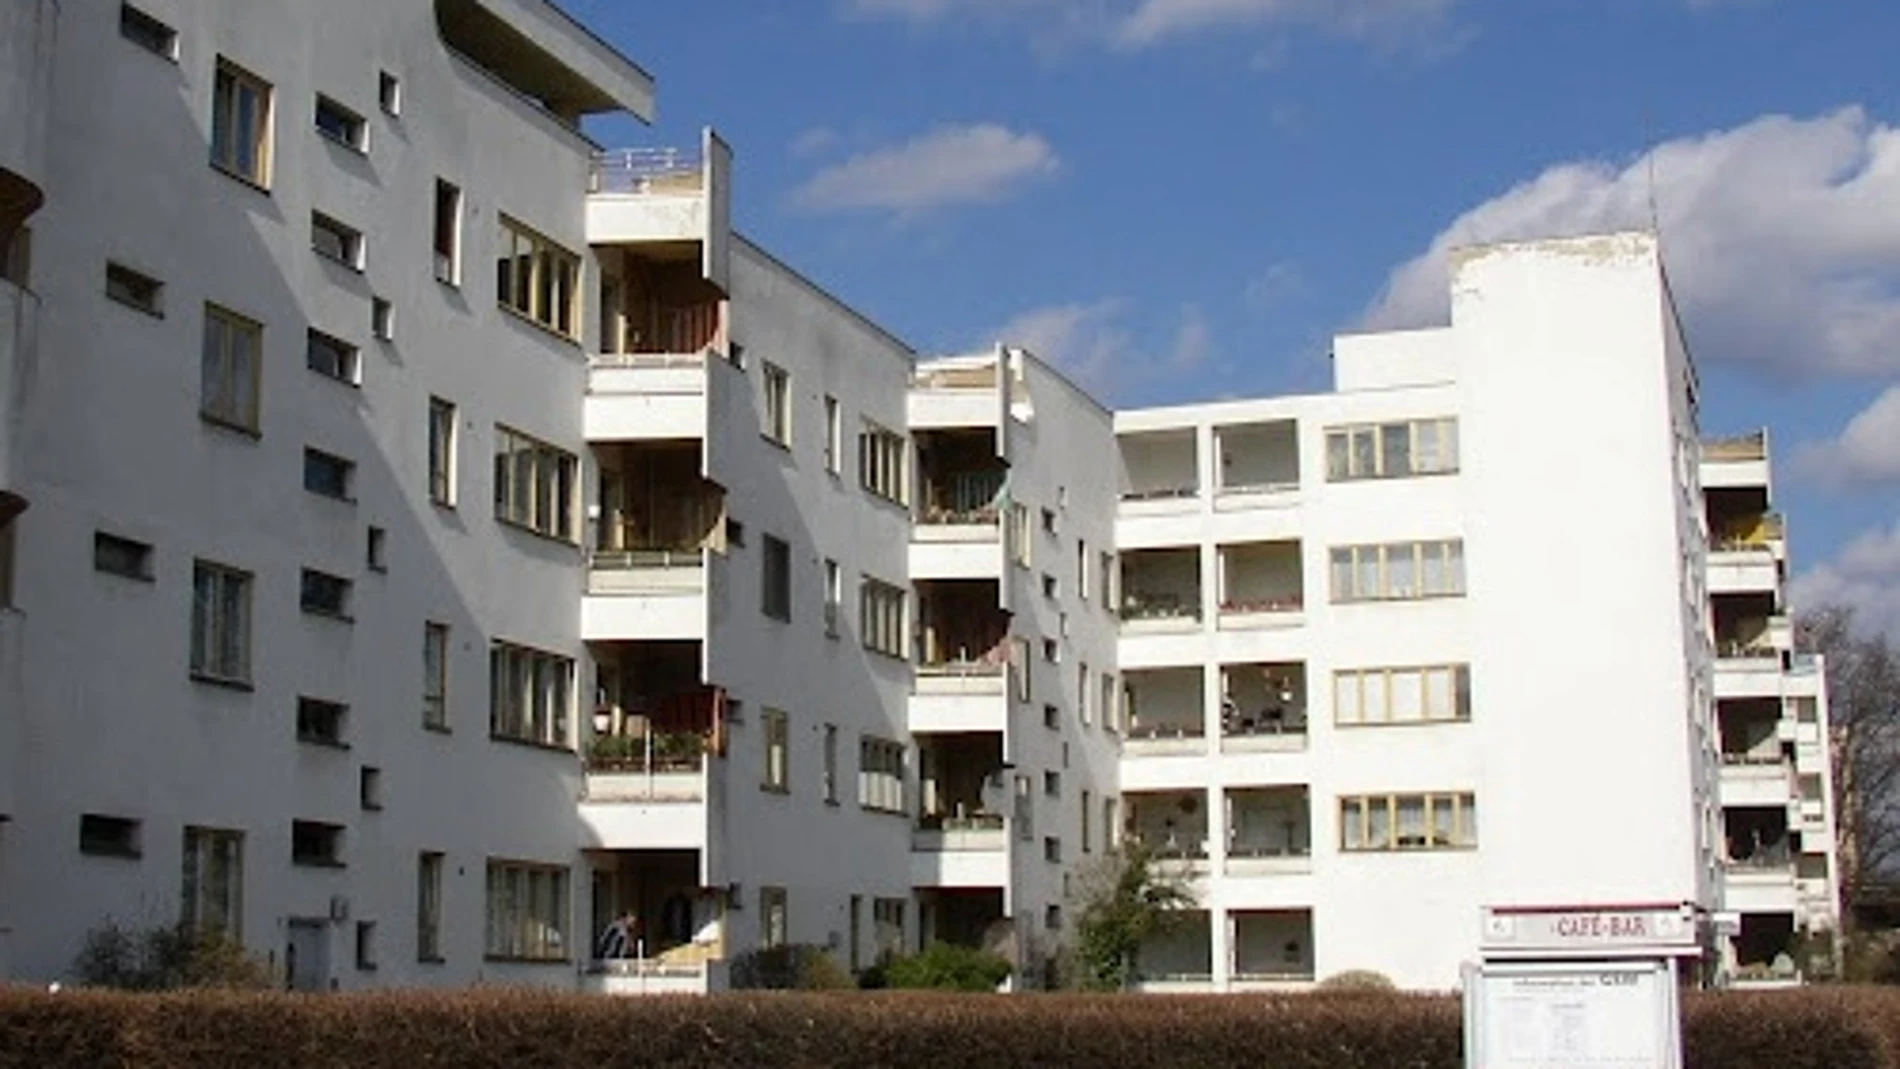 Edificio de viviendas en Berlín